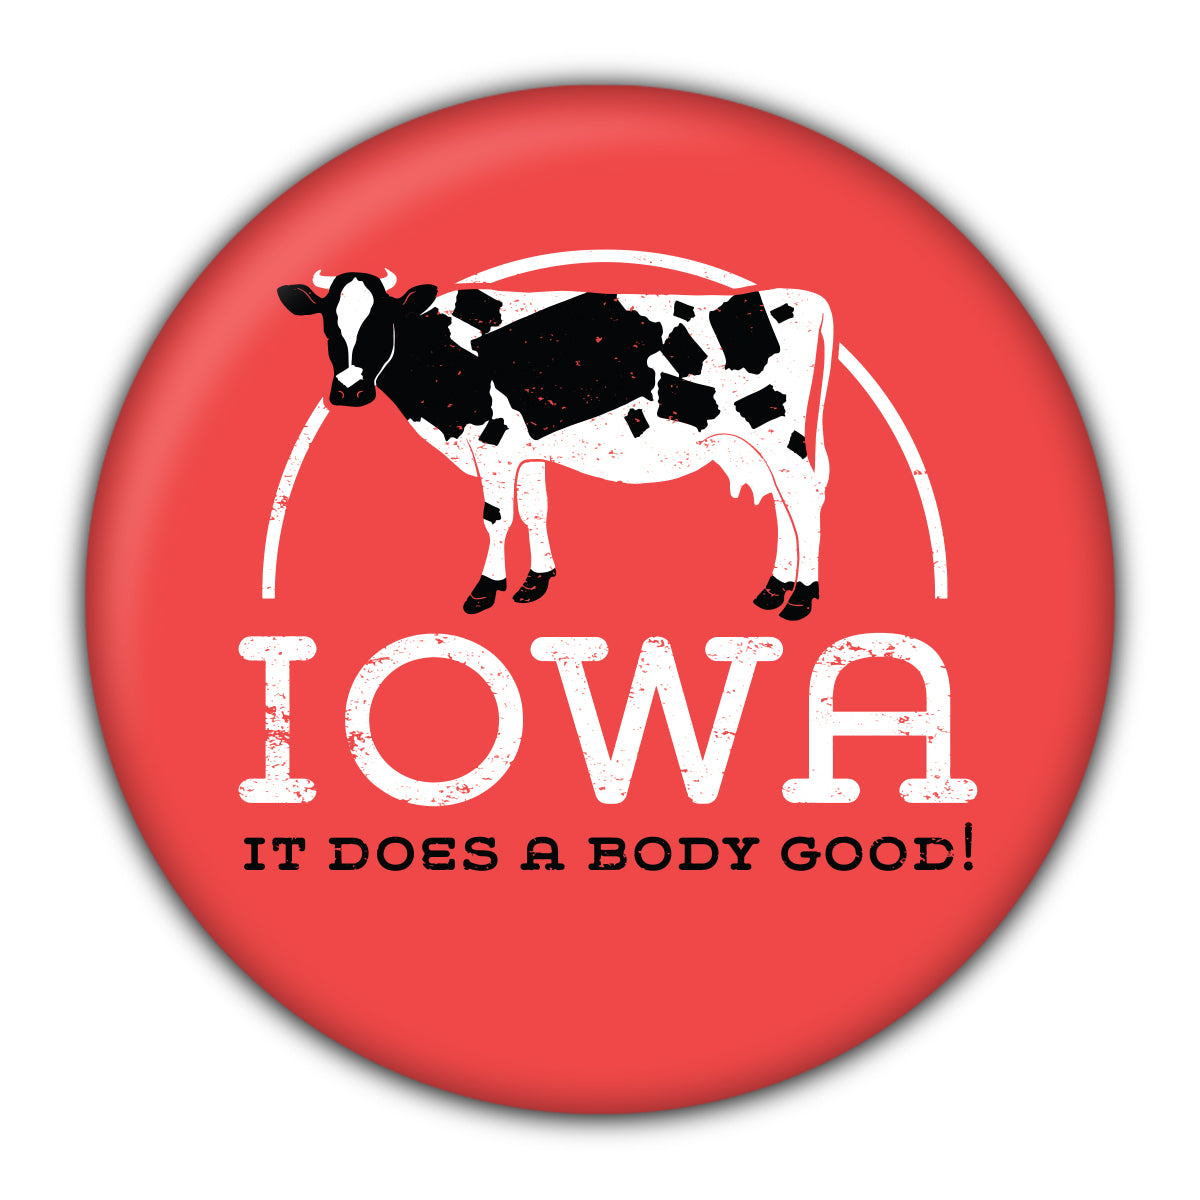 Iowa Does A Body Good Round Coaster - Bozz Prints